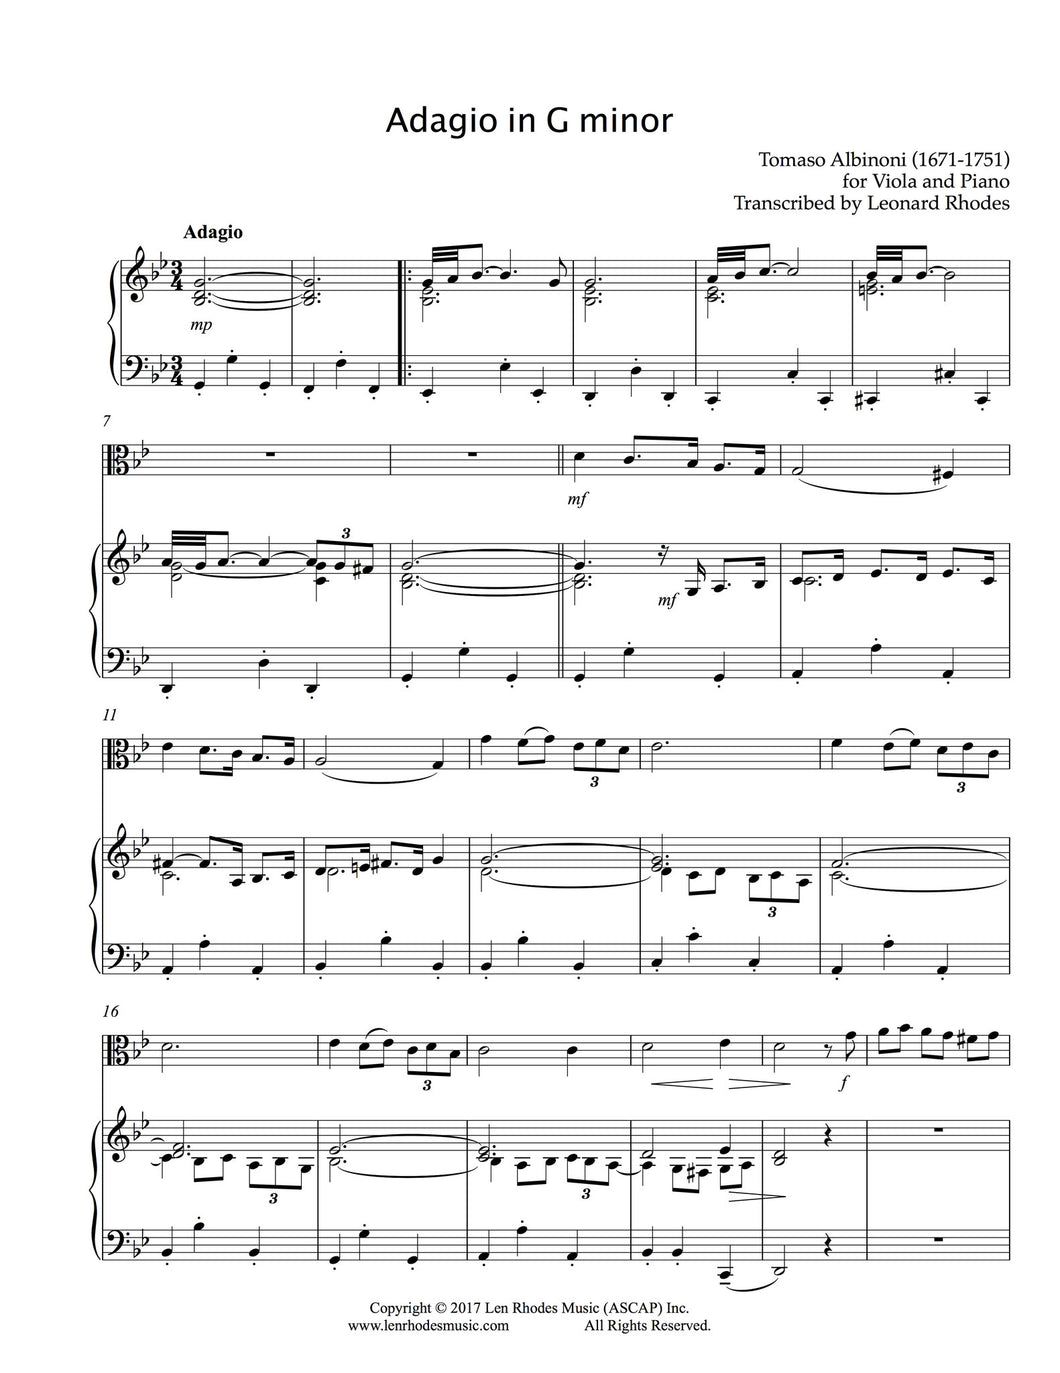 Adagio in G minor, Albinoni - Viola and Piano